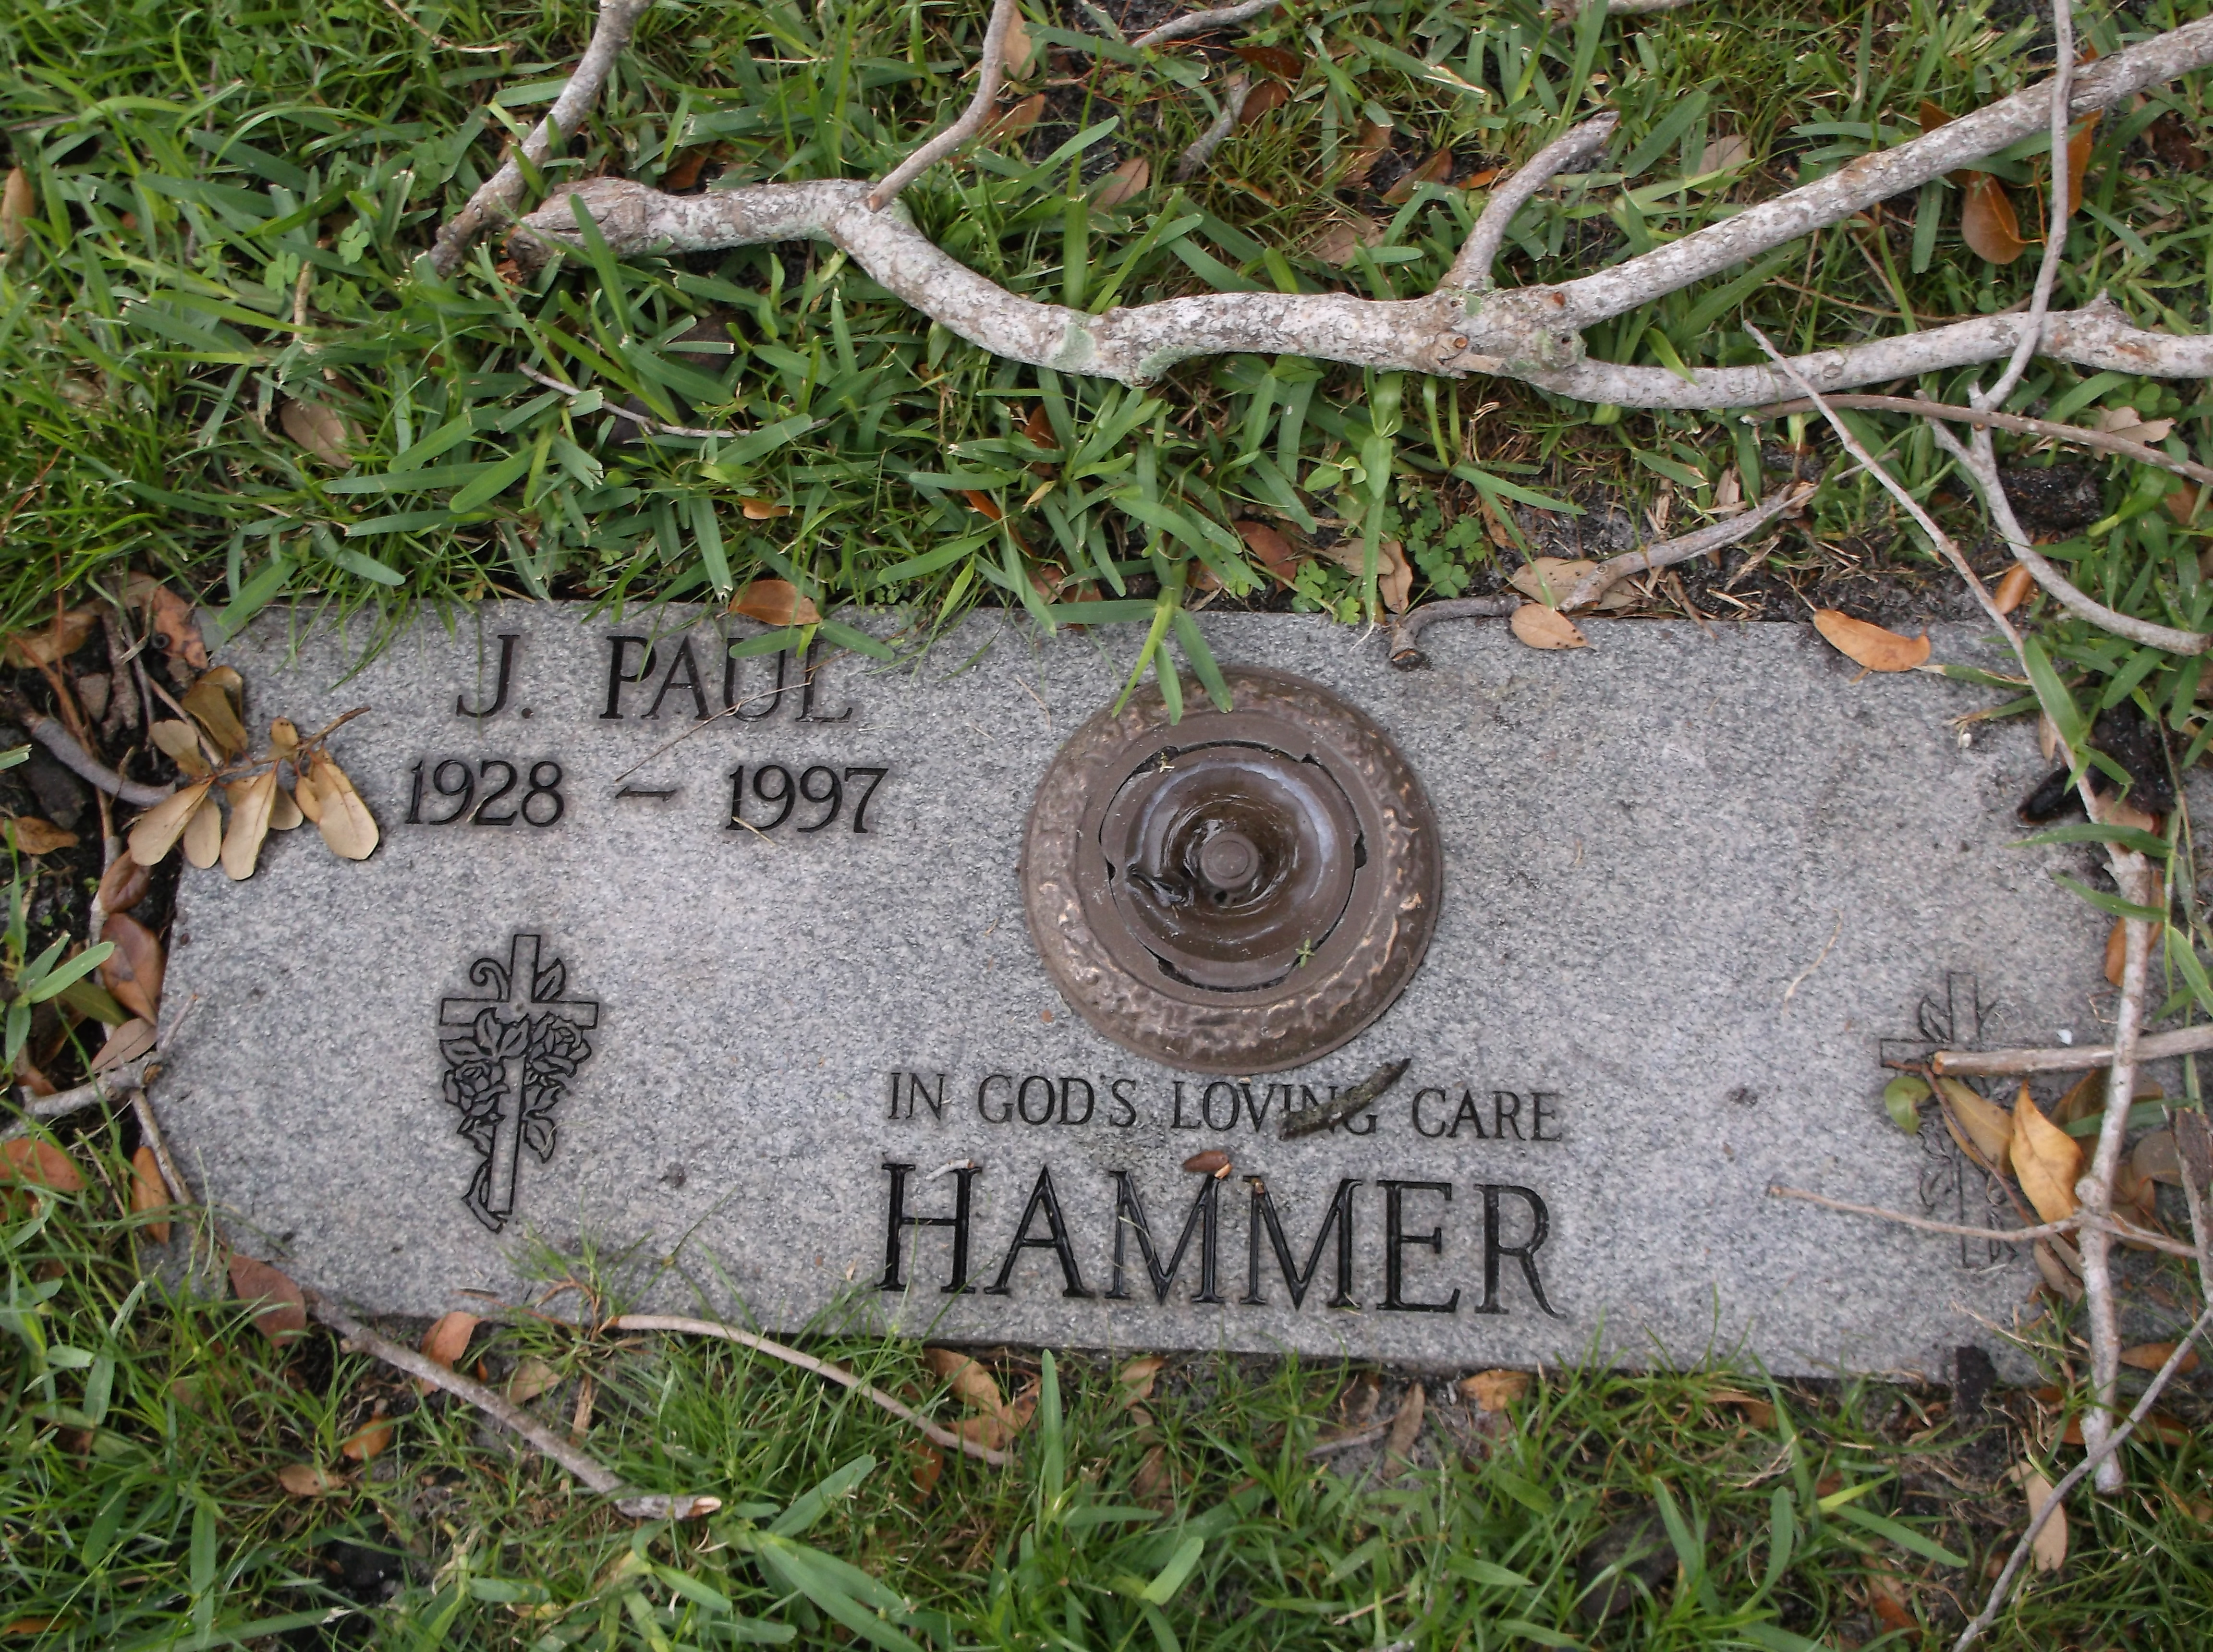 J Paul Hammer